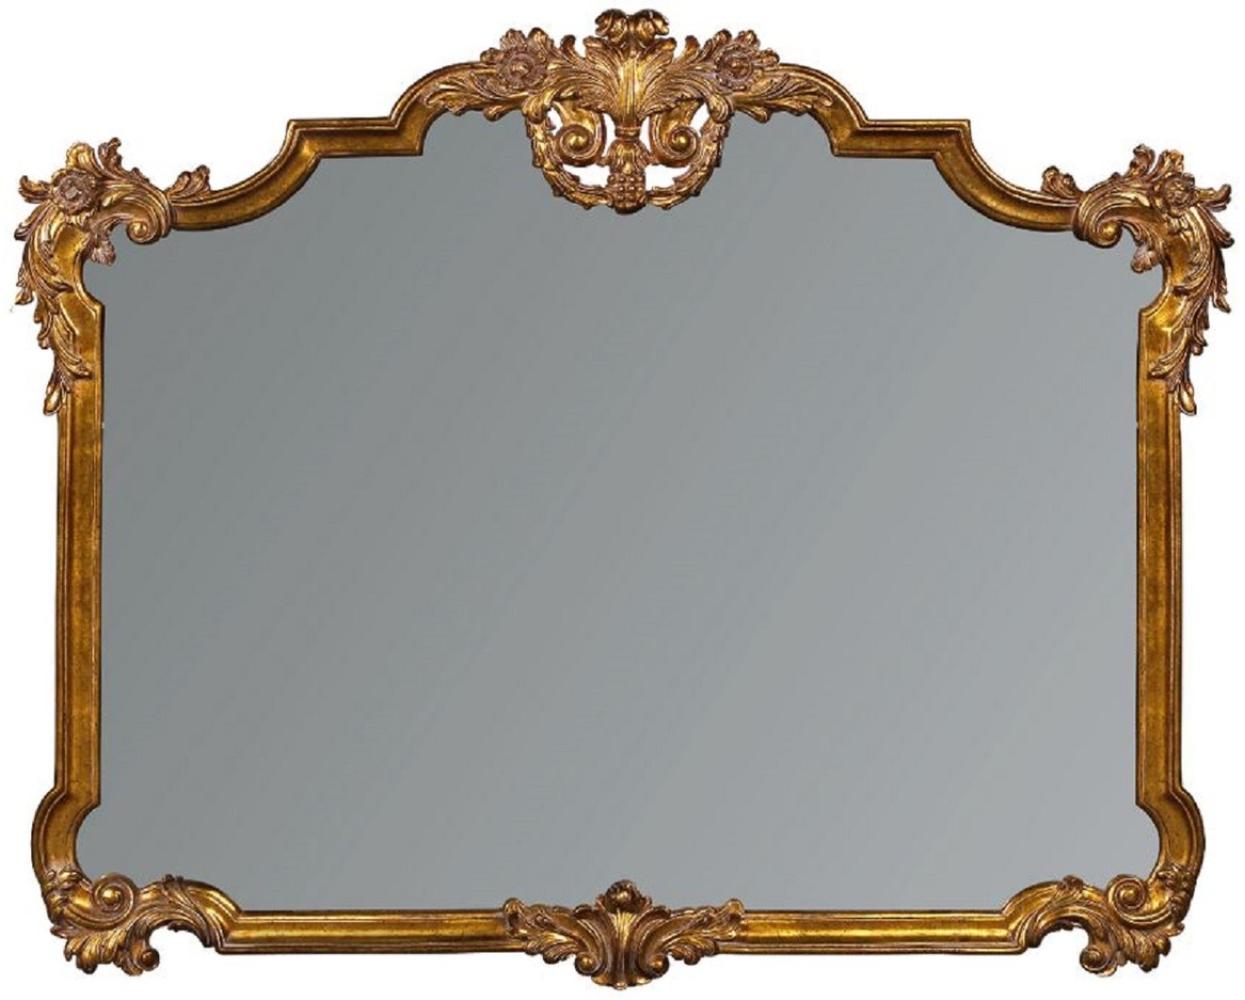 Casa Padrino Luxus Barock Spiegel Antik Gold - Prunkvoller Wandspiegel im Barockstil - Antik Stil Garderoben Spiegel - Wohnzimmer Spiegel - Barock Deko Accessoires Bild 1